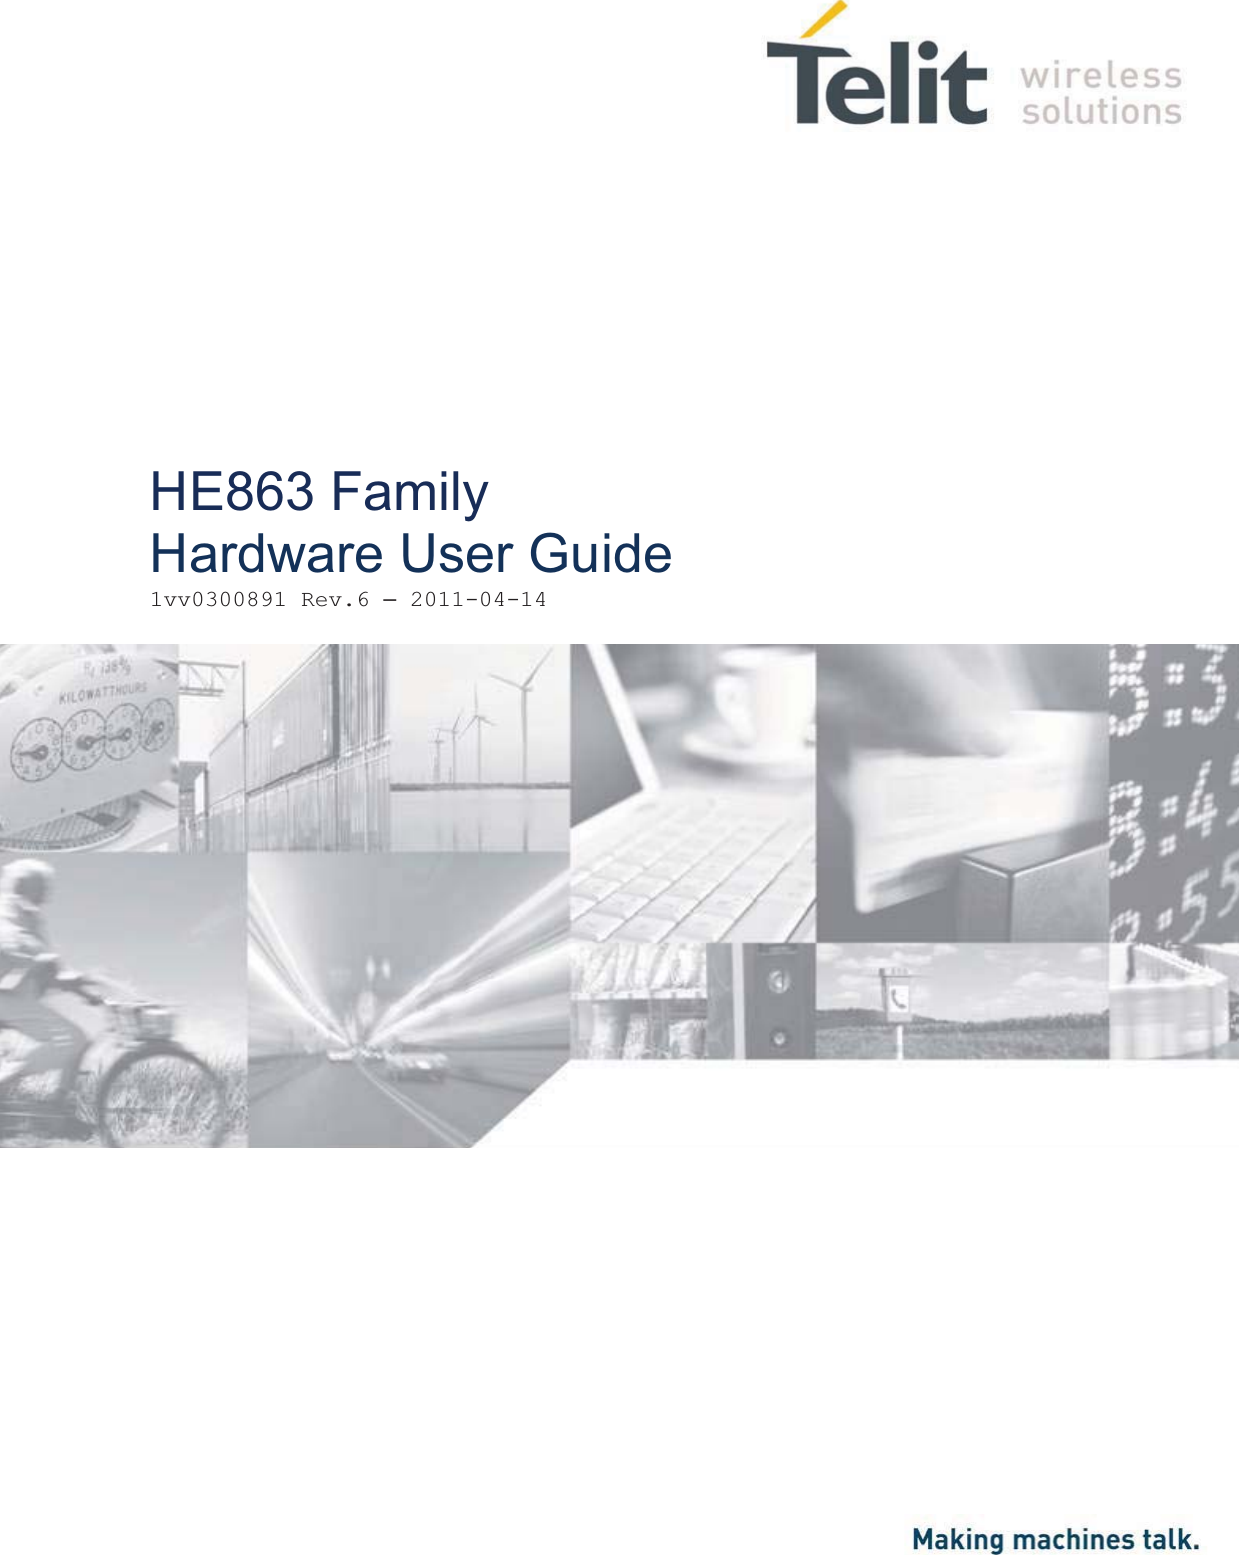                     HE863 Family Hardware User Guide1vv0300891 Rev.6 – 2011-04-14 